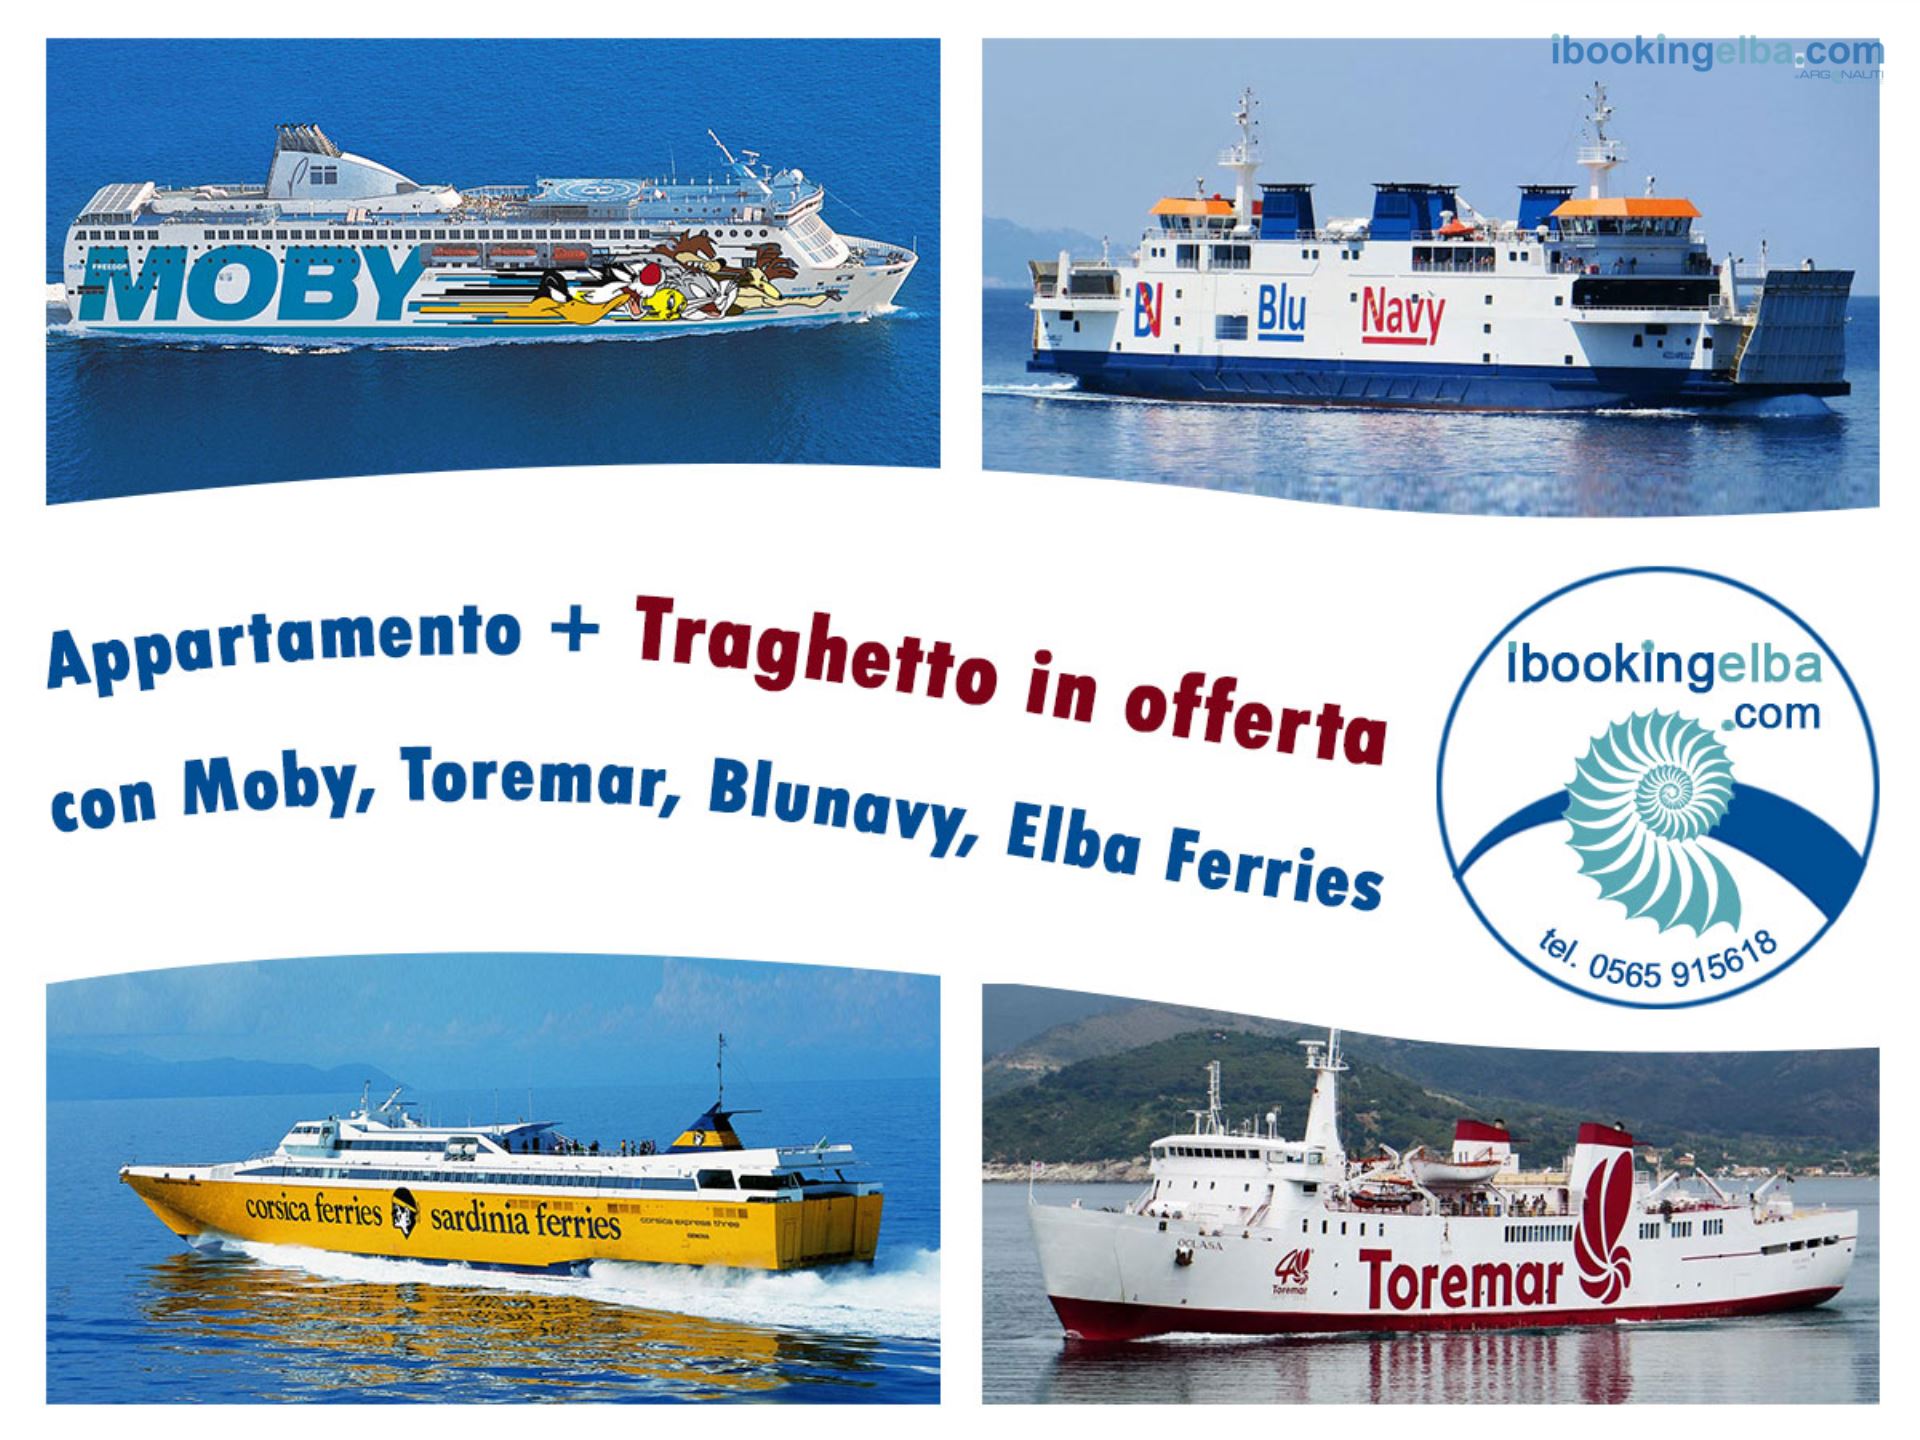 Traghetto + Soggiorno a tariffa speciale!!!